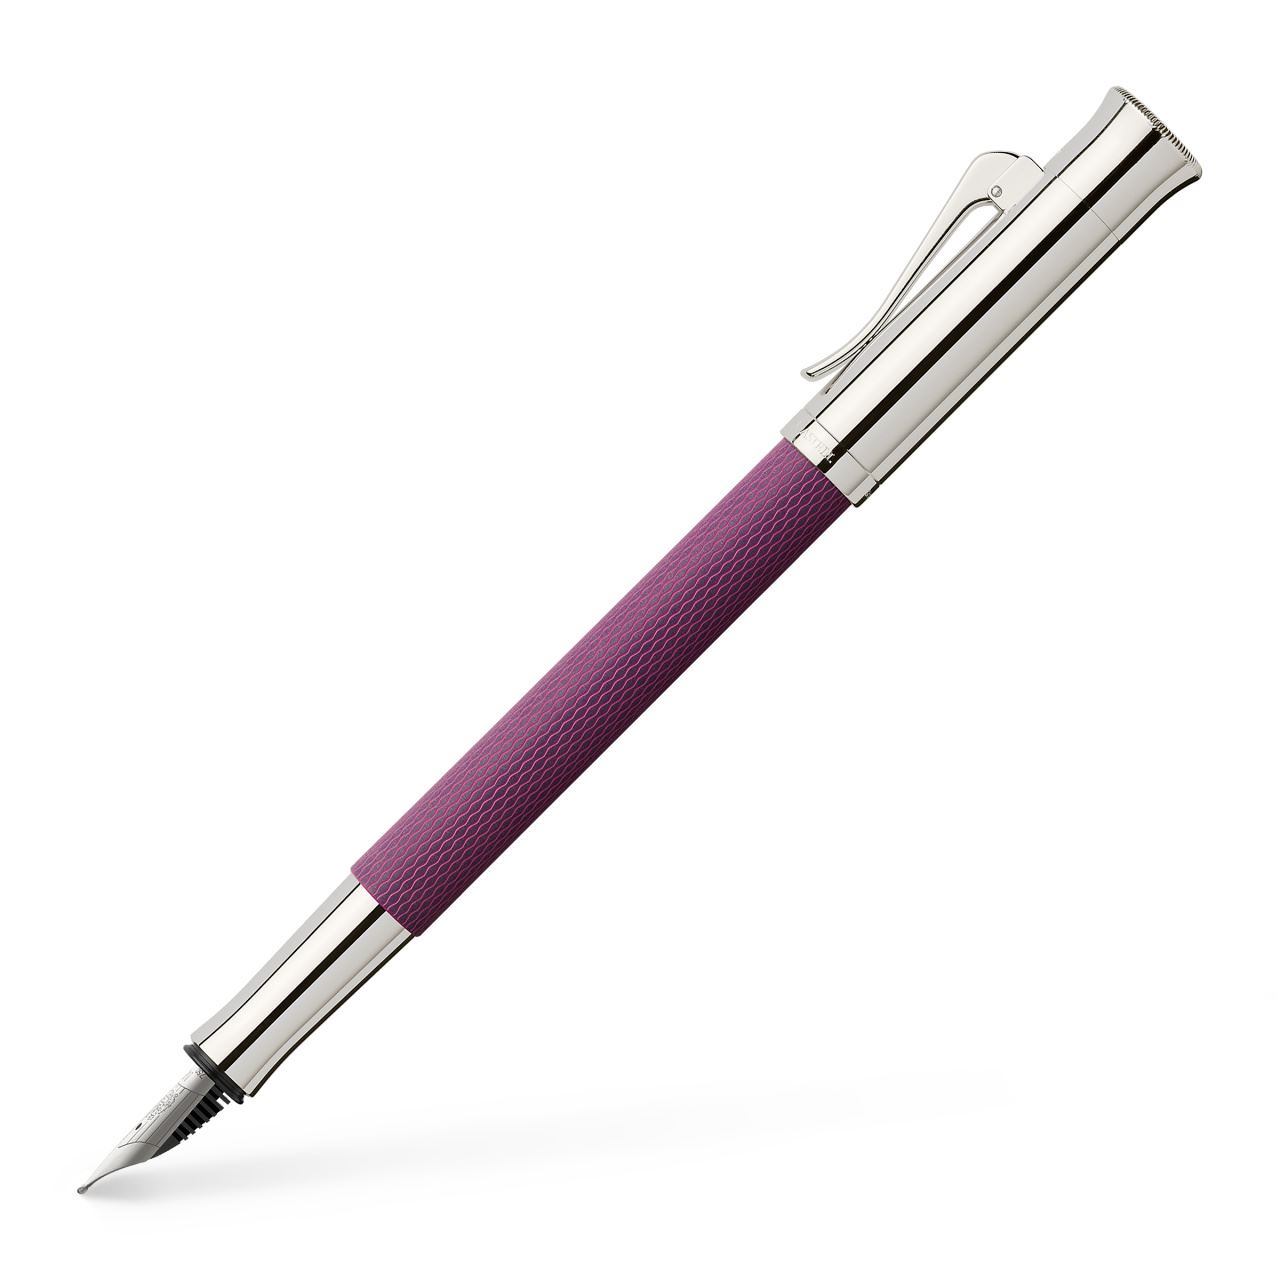 Graf-von-Faber-Castell - Fountain pen Guilloche Violet Blue EF